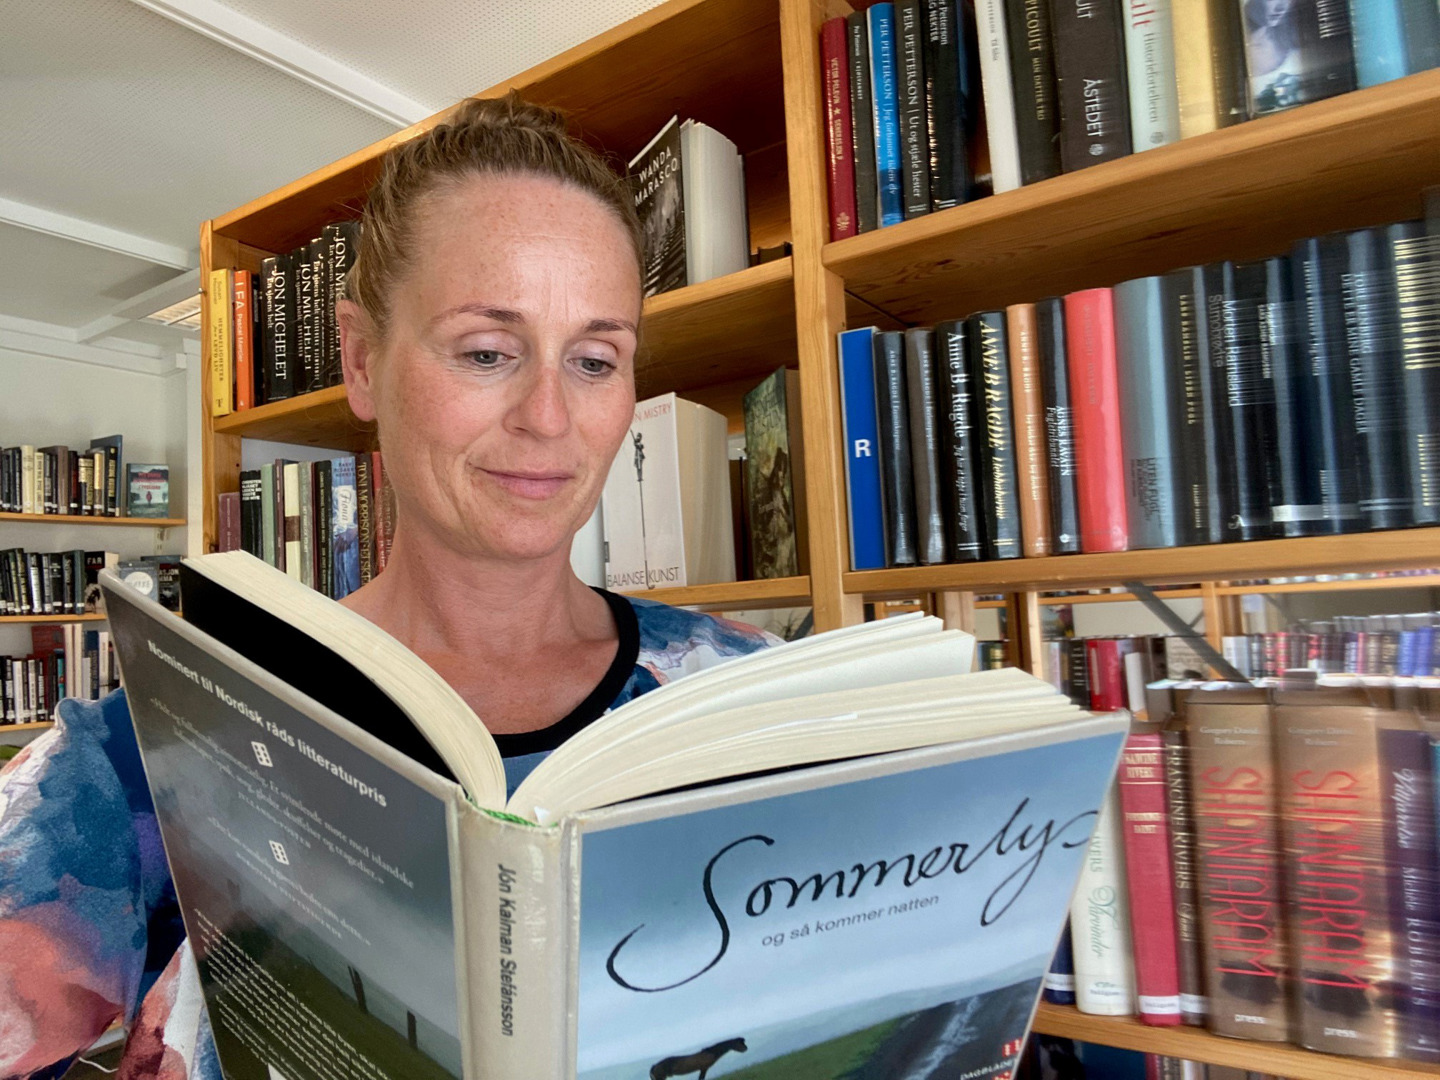 Bibliotekar leser i boka "Sommerlys og så kom natten". Foto